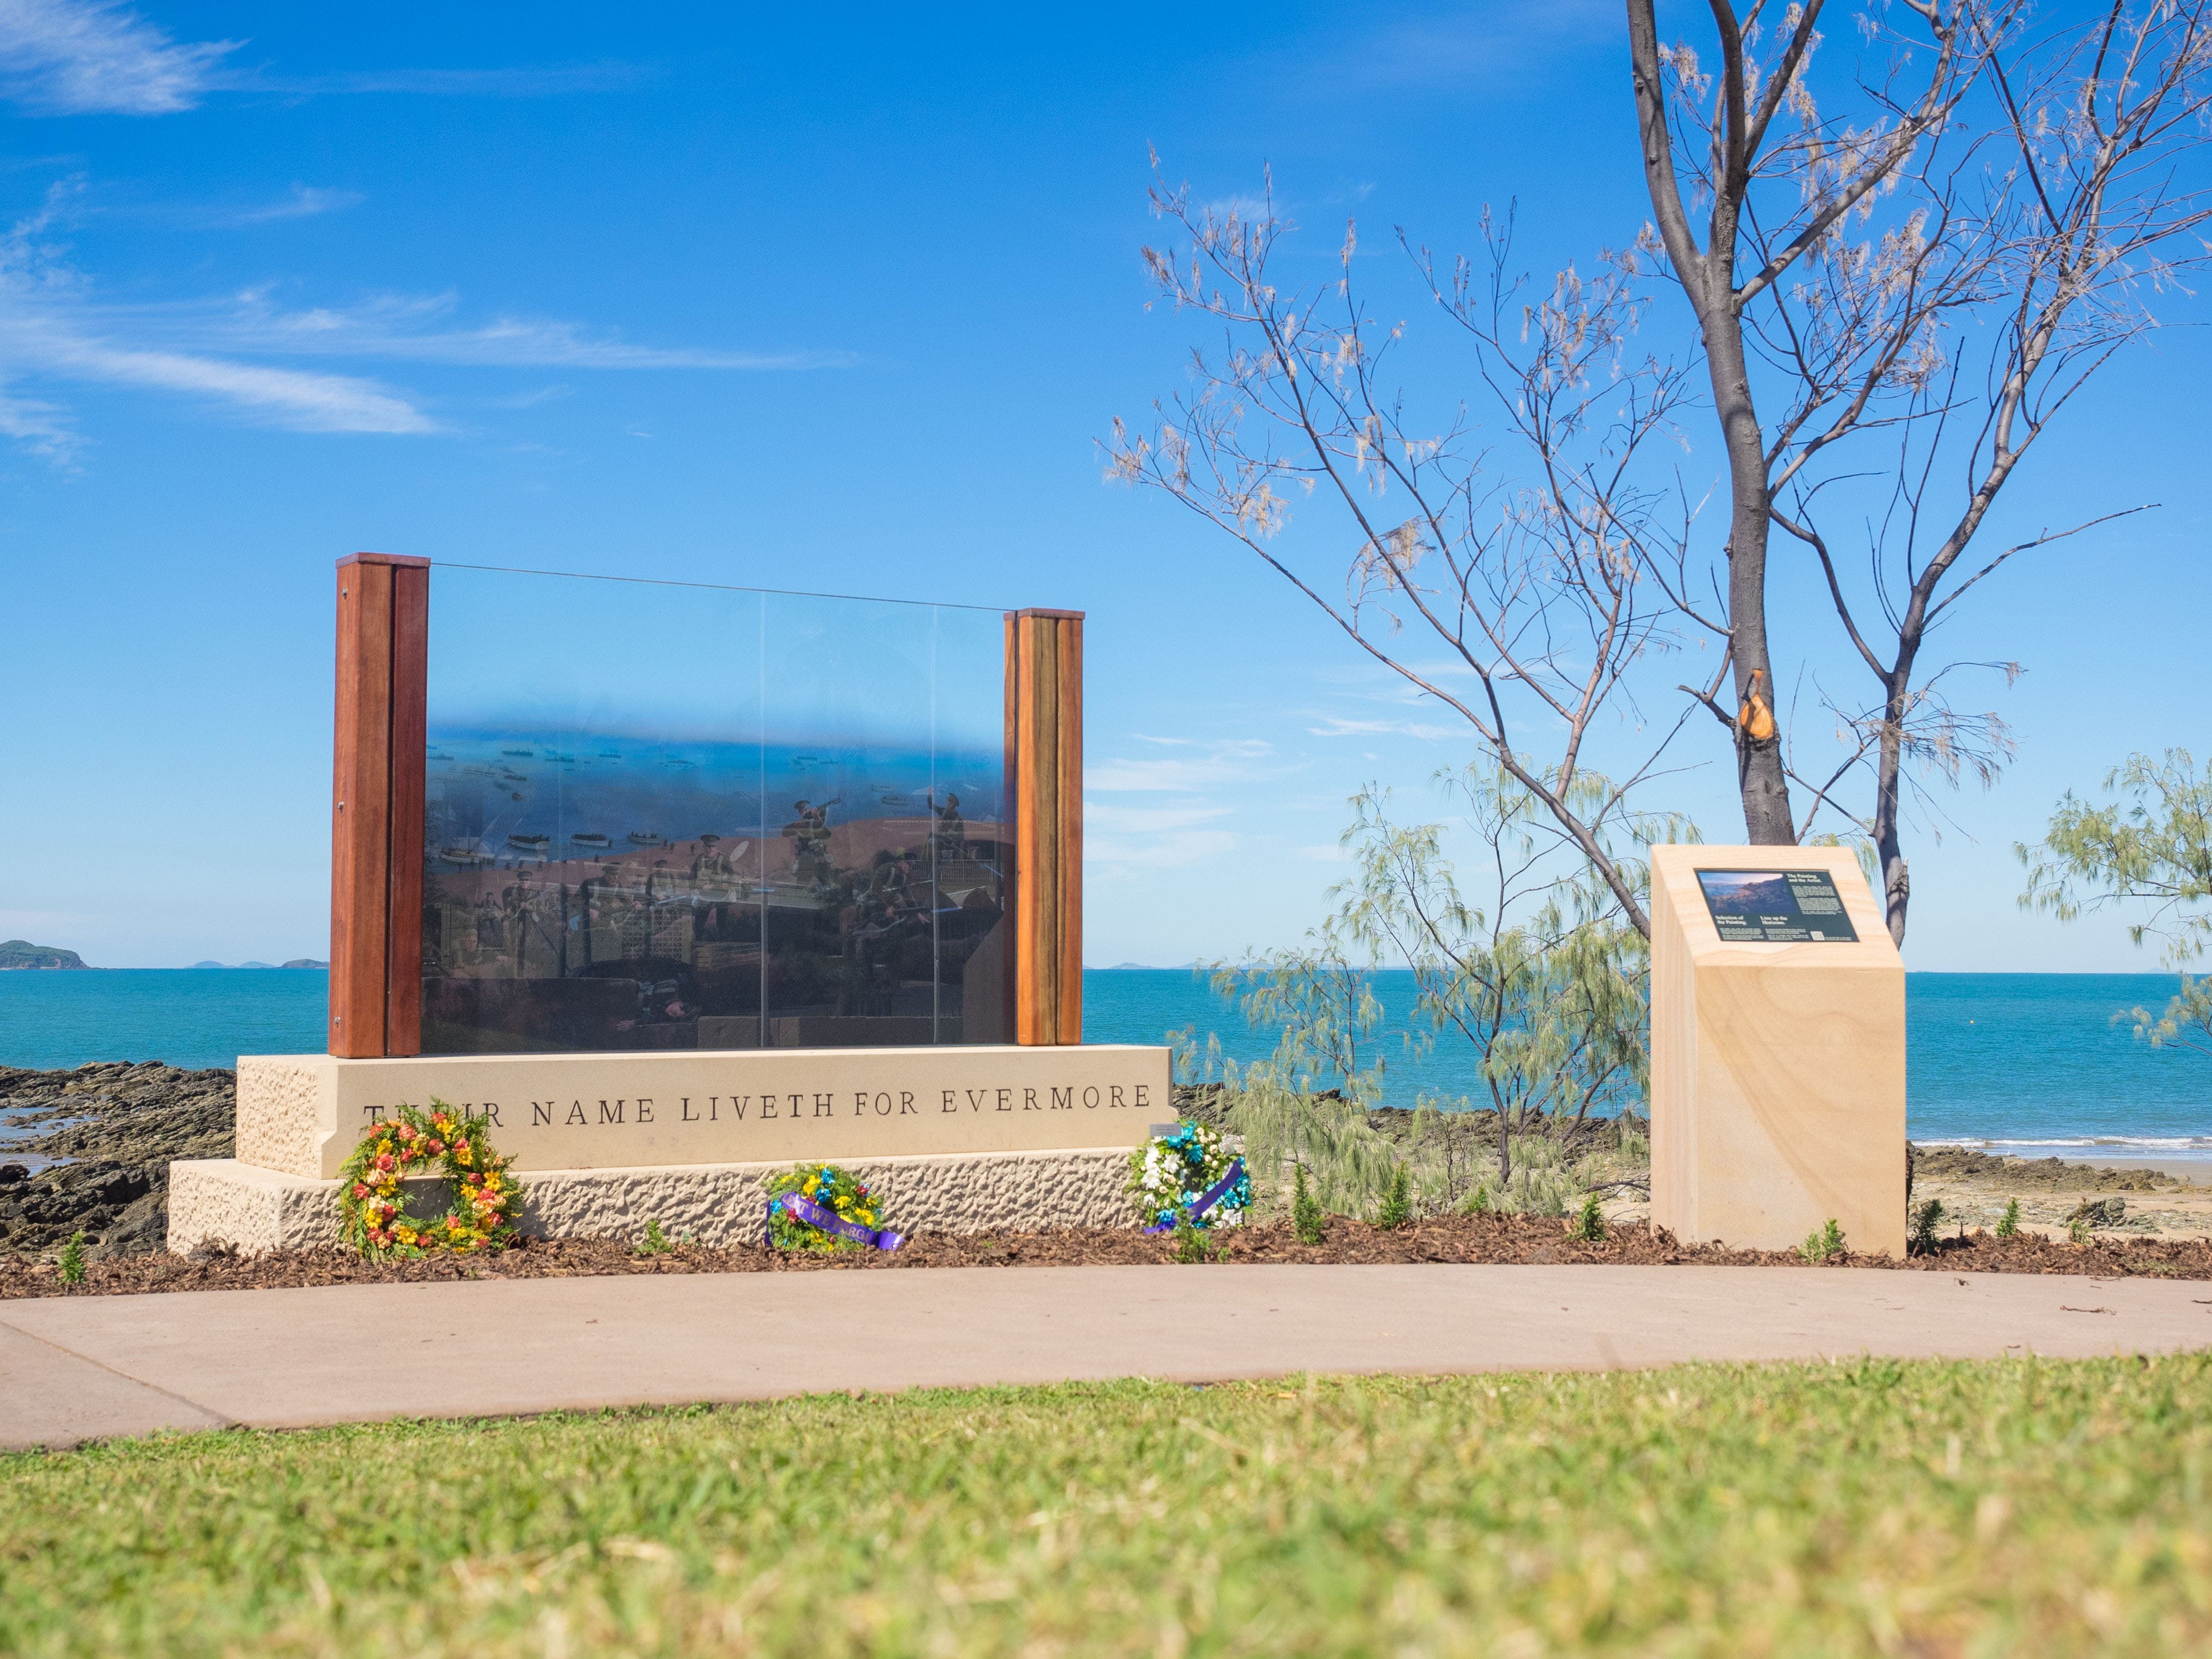 The Centenary of ANZAC Memorial Walk - Tourism Adelaide